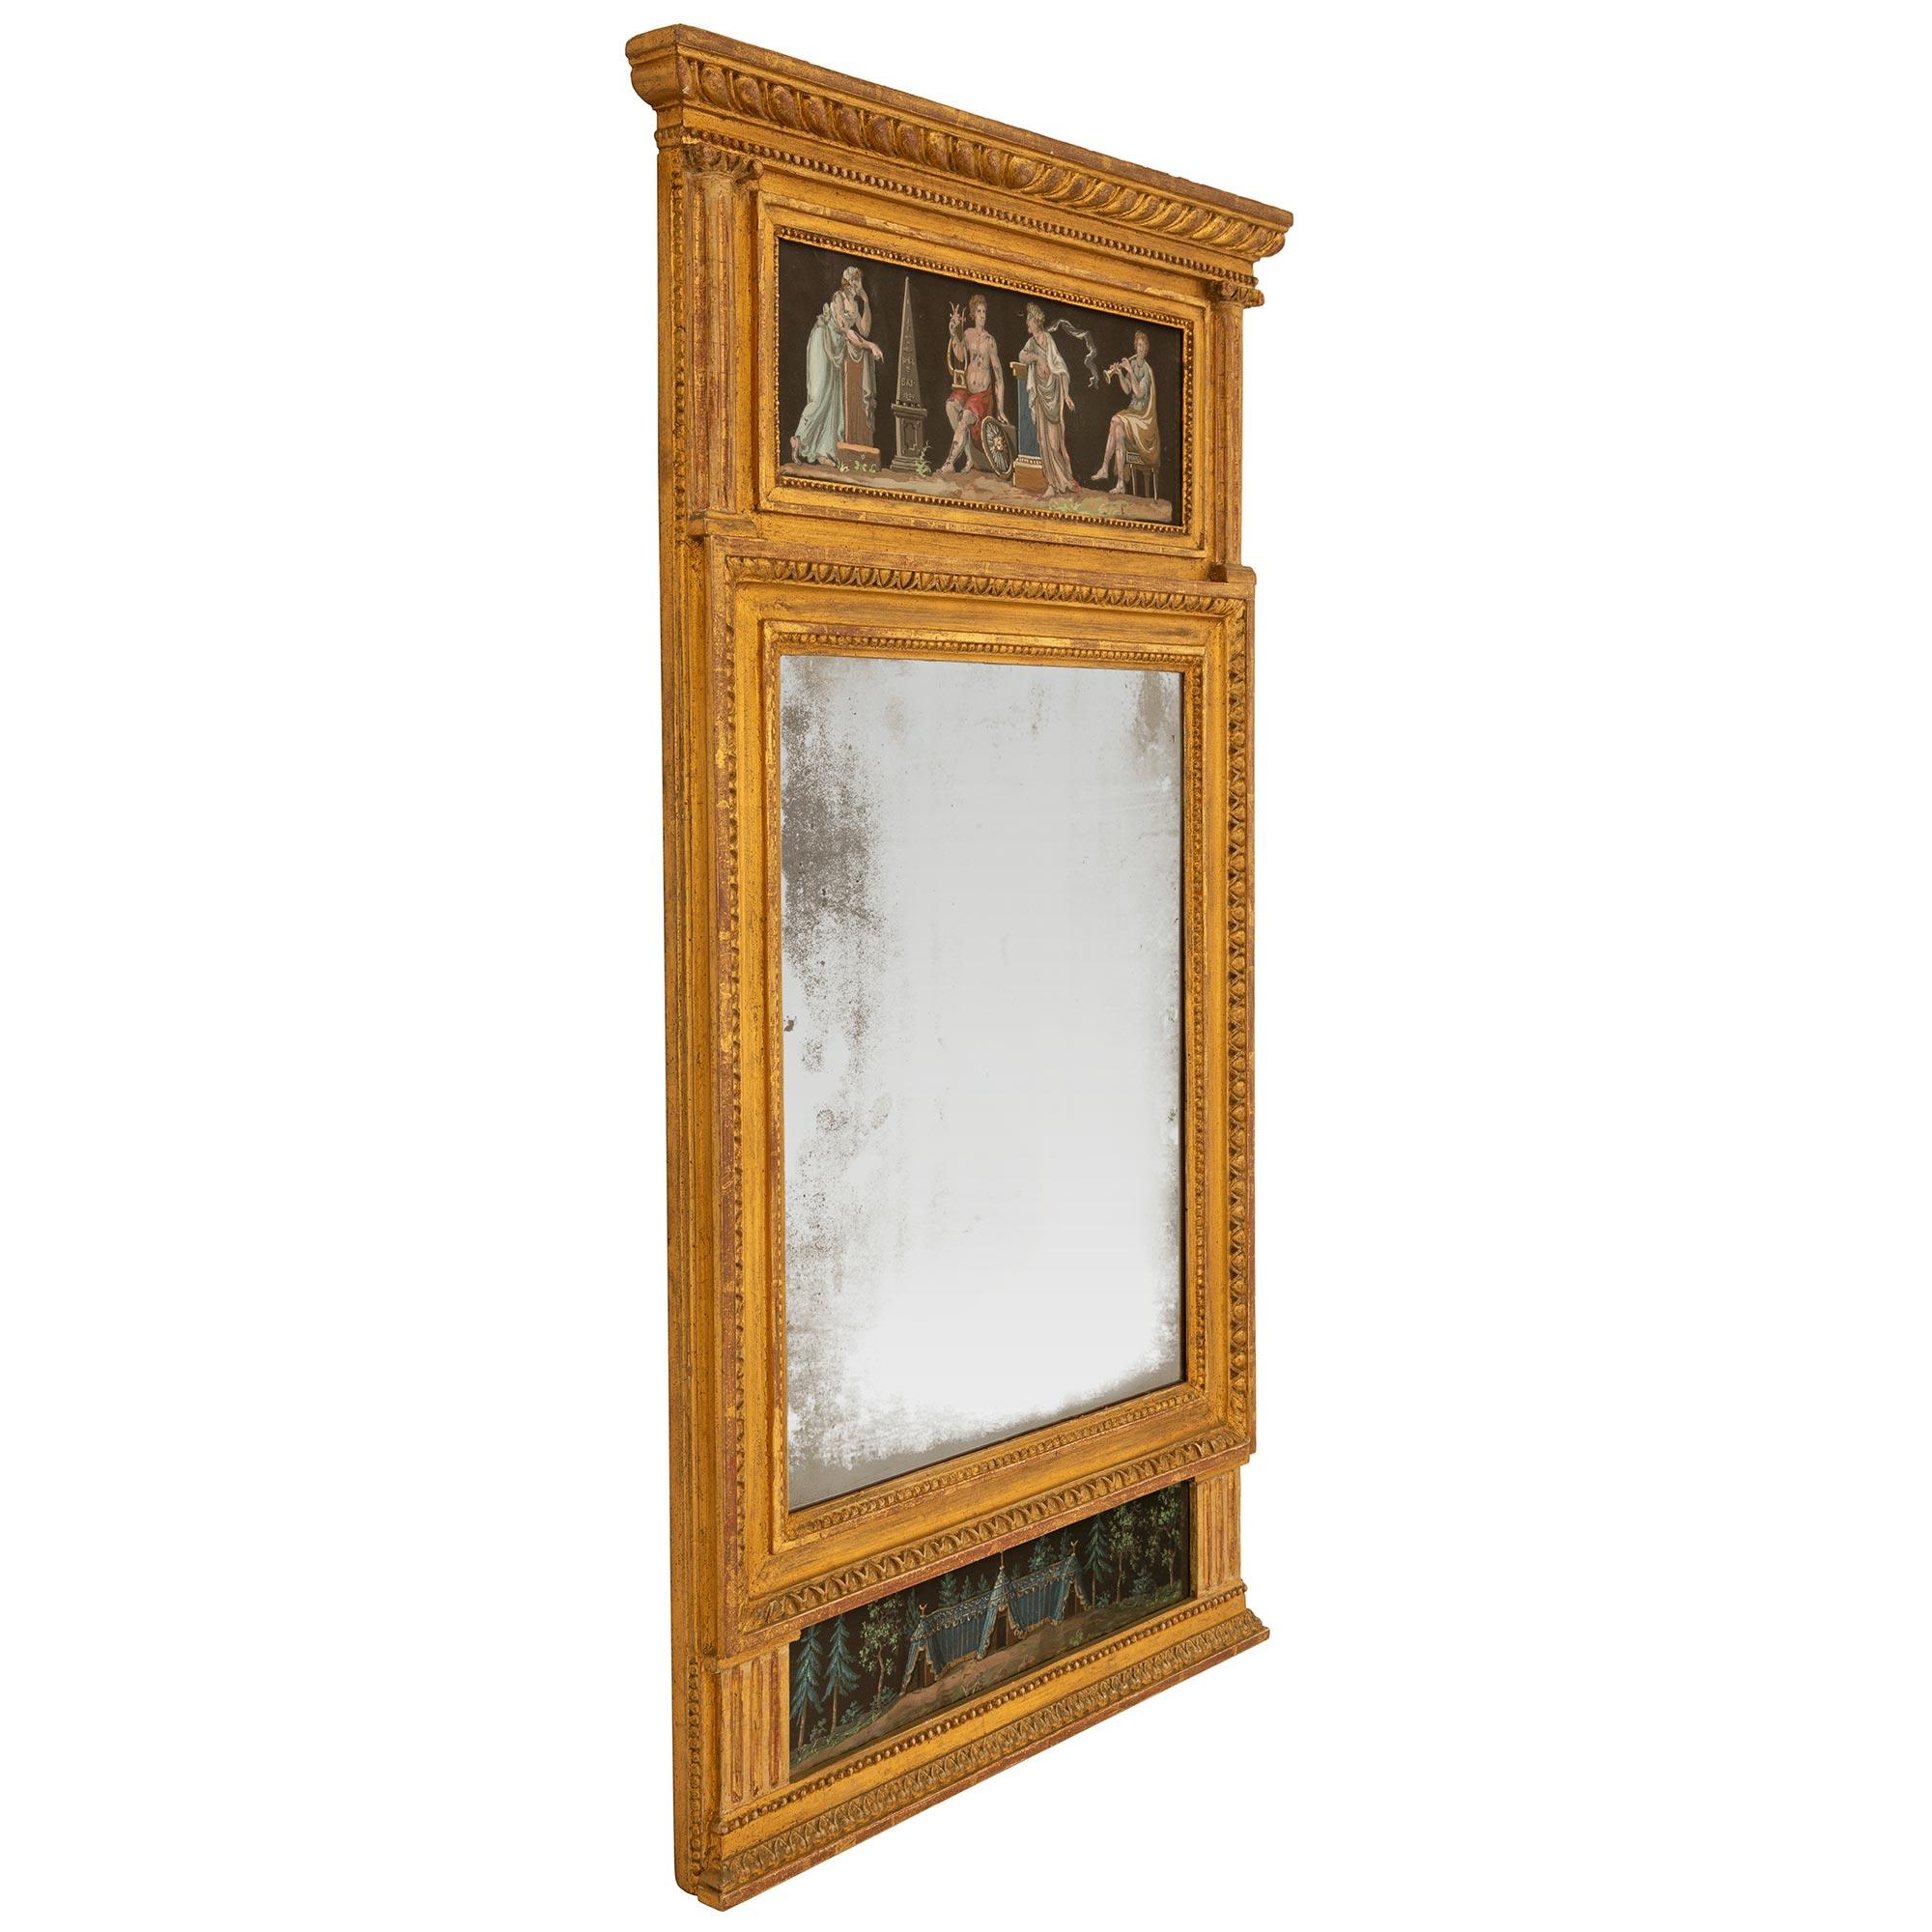 Exceptionnel miroir trumeau néoclassique italien du début du XIXe siècle en bois doré et gouache. Le miroir conserve sa plaque d'origine, entourée d'un fin bandeau perlé tacheté et d'une élégante bordure en forme d'œuf et de fléchette. À la base se